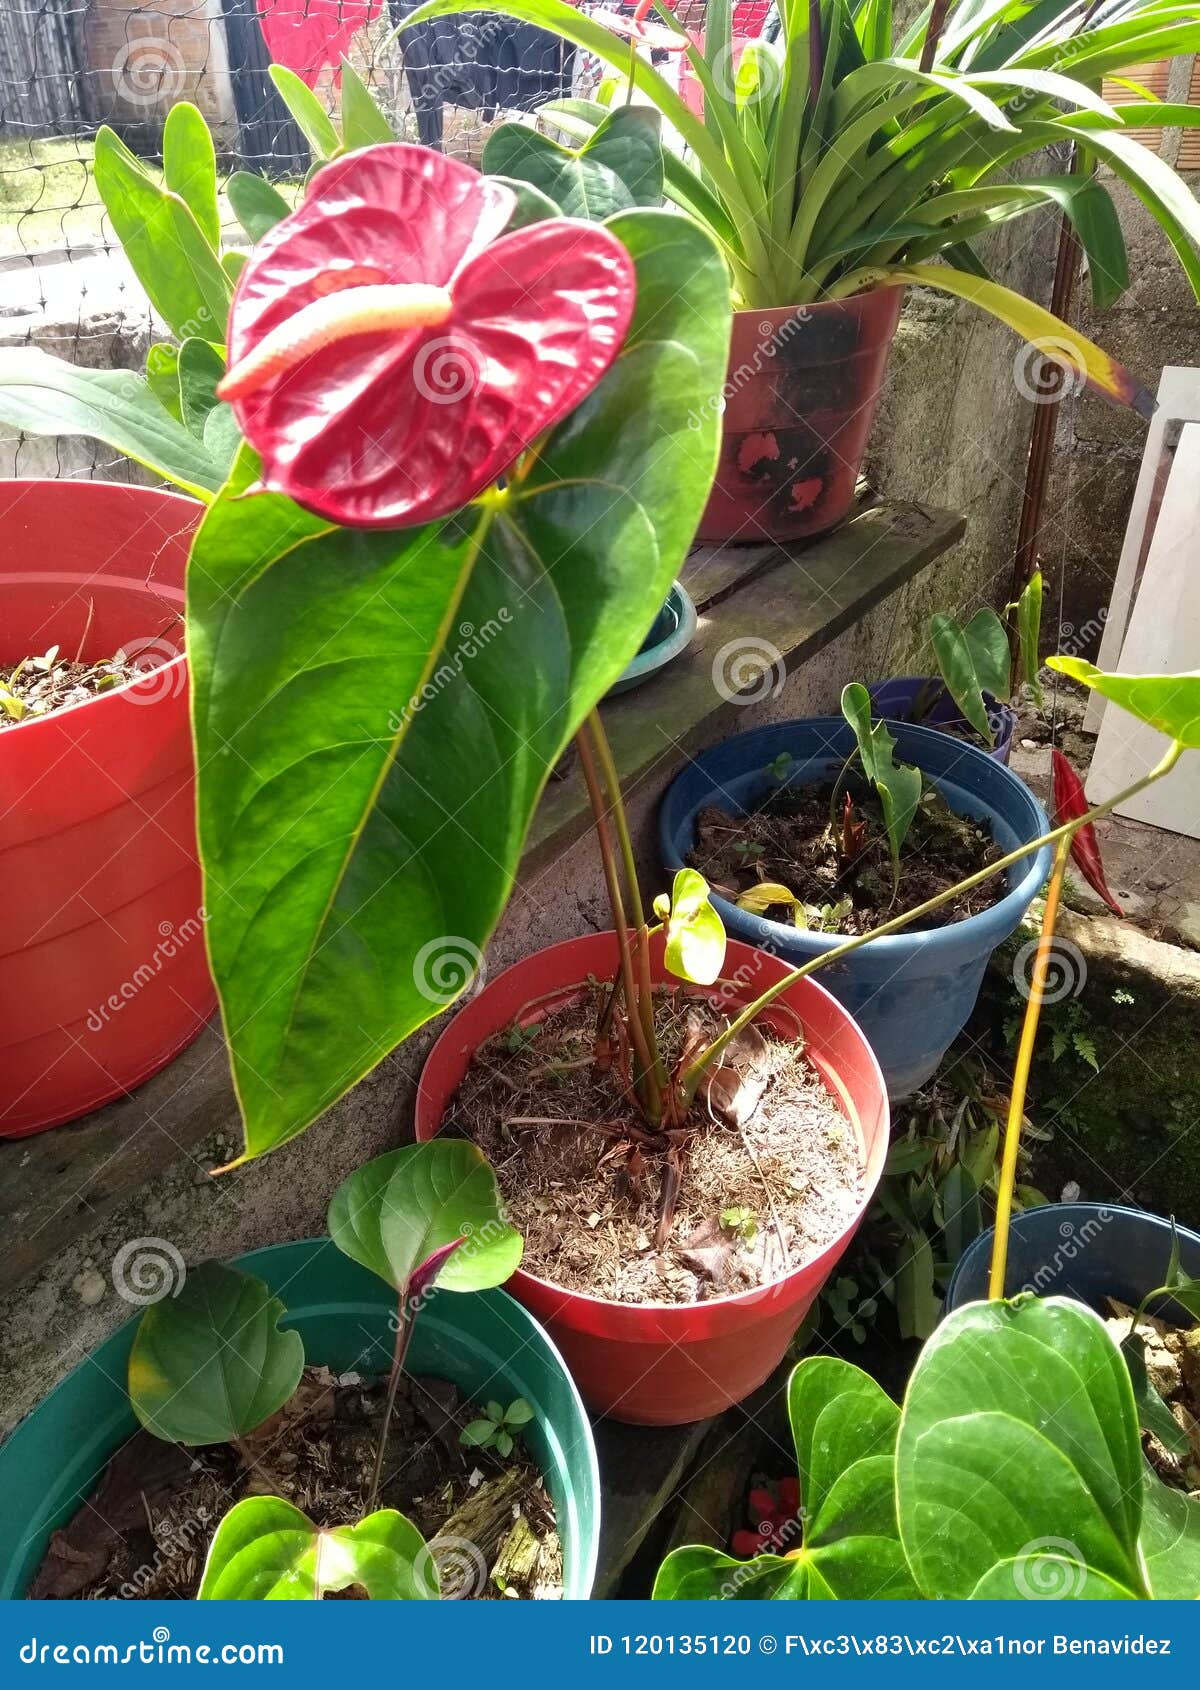 Cartucho Rojo foto de archivo. Imagen de flor, plantas - 120135120